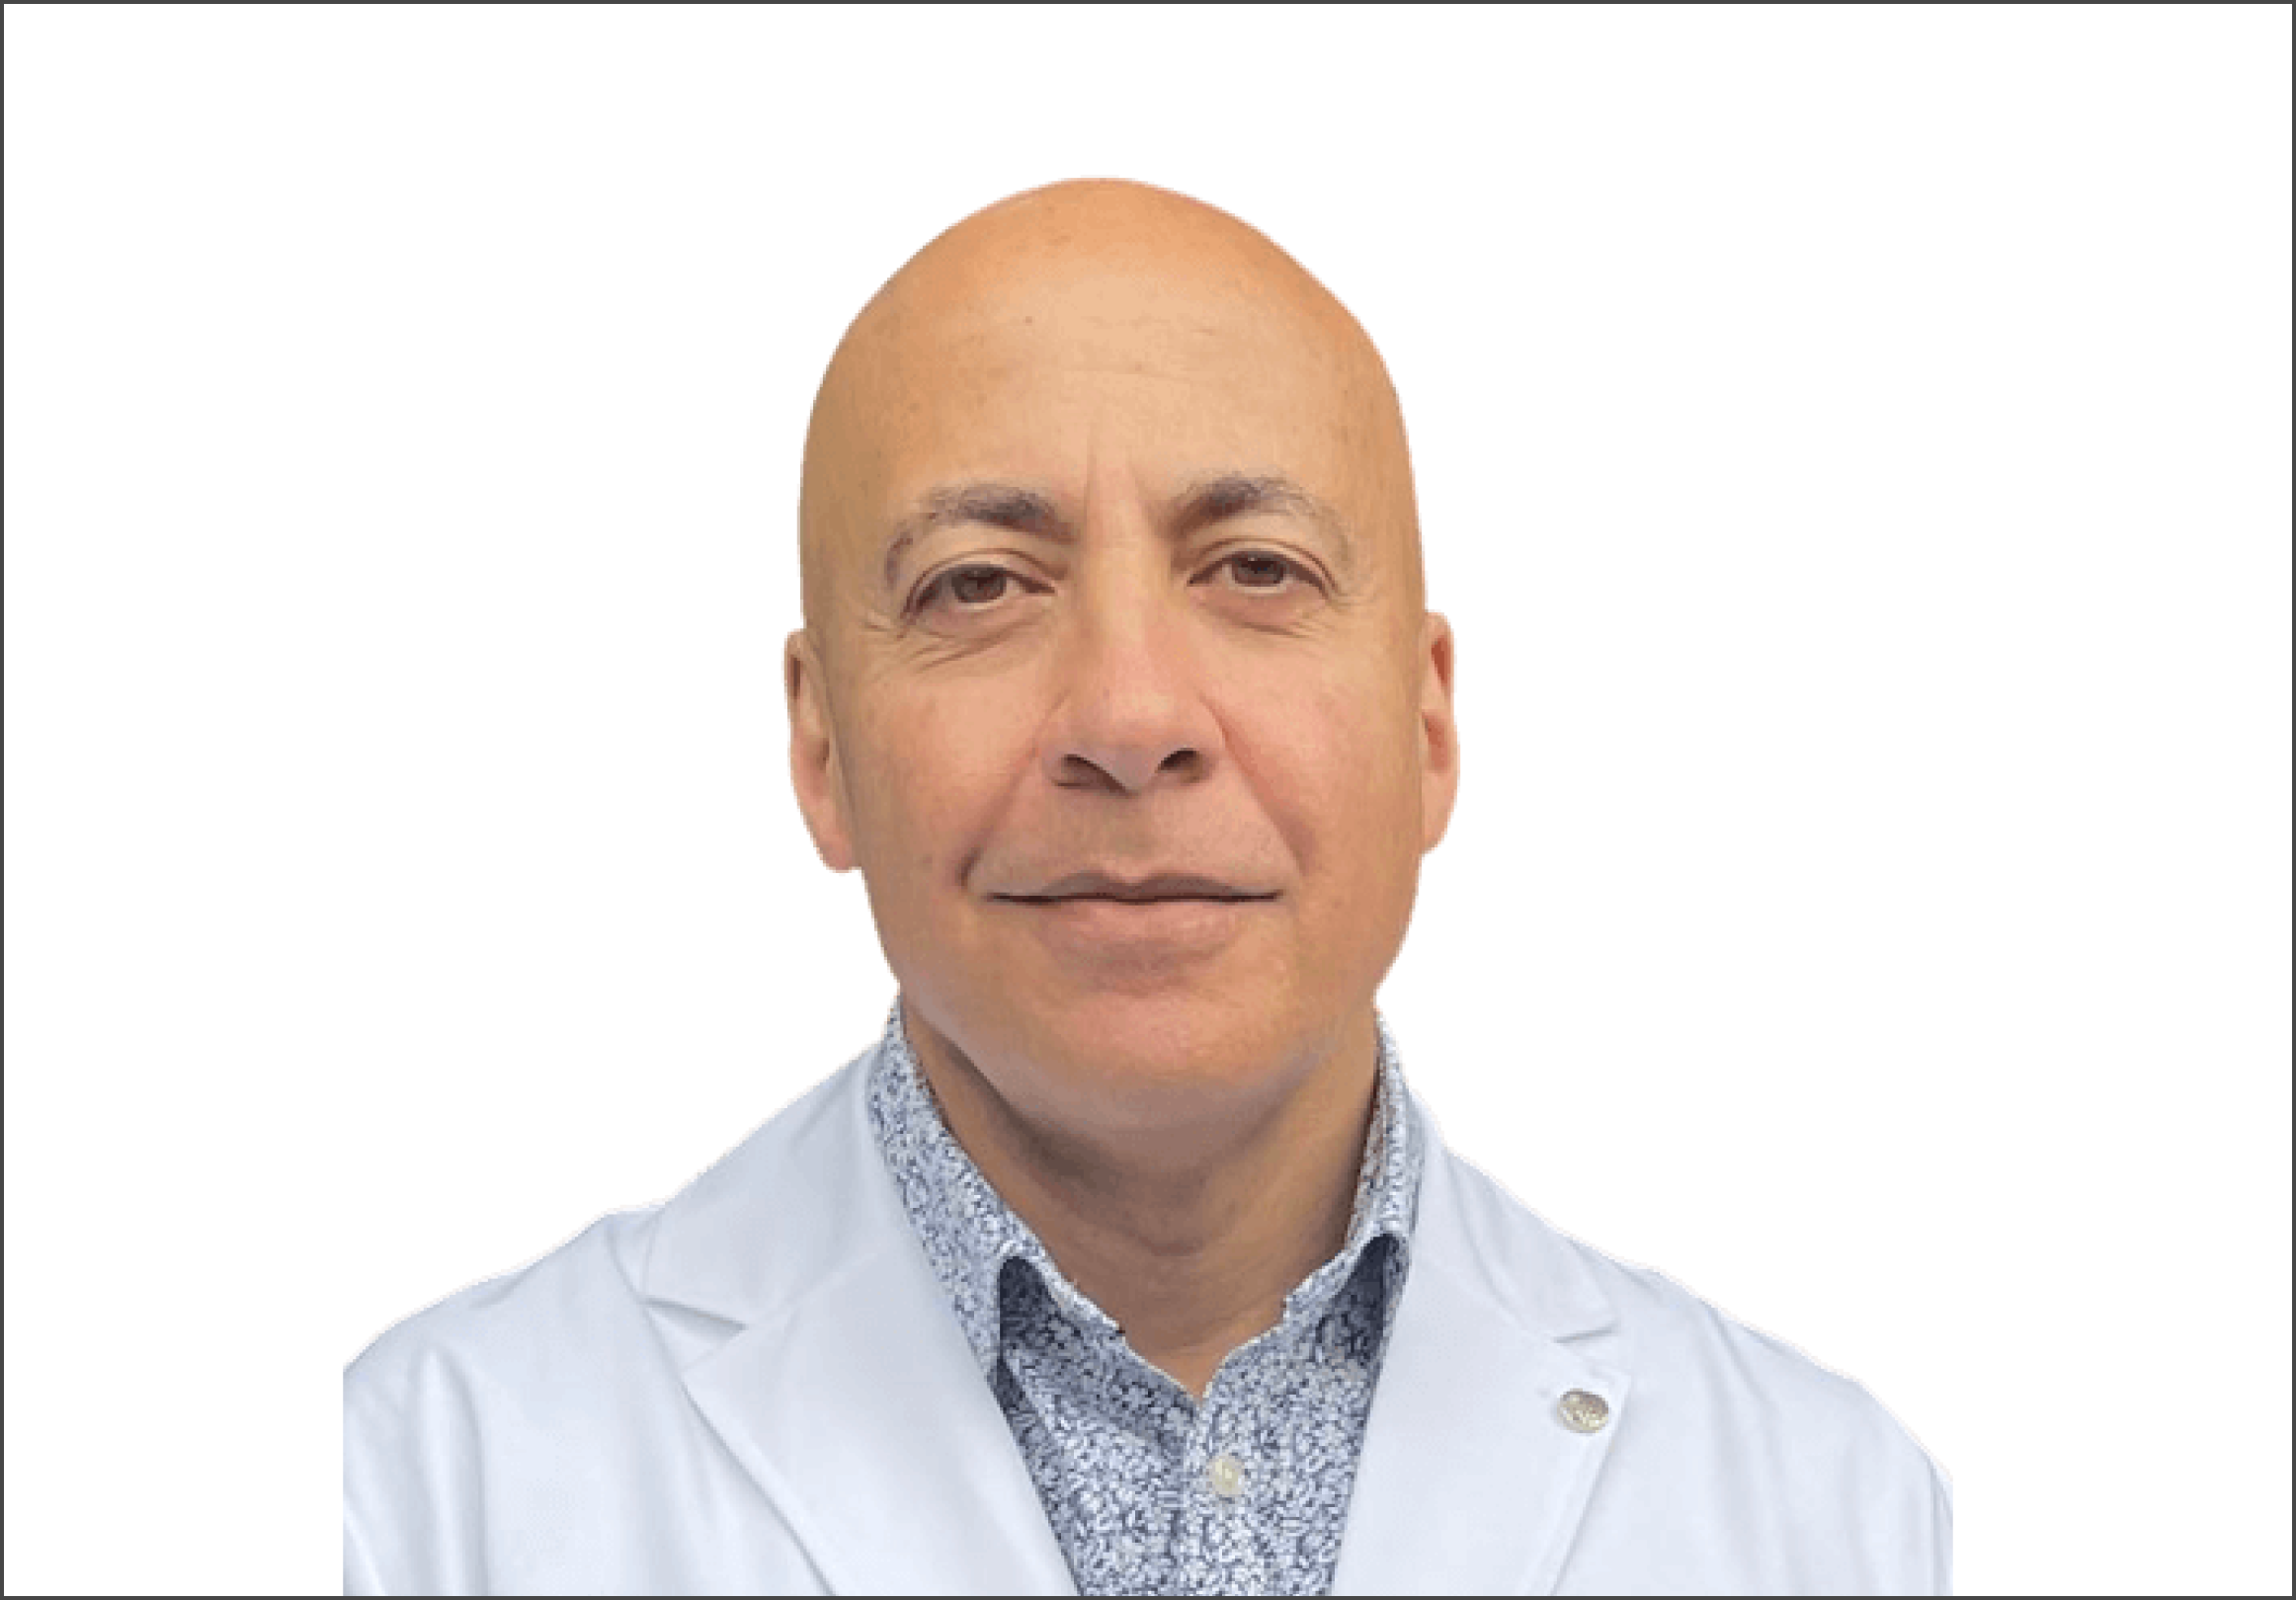 dr Arraf penile filler specialist in Austin